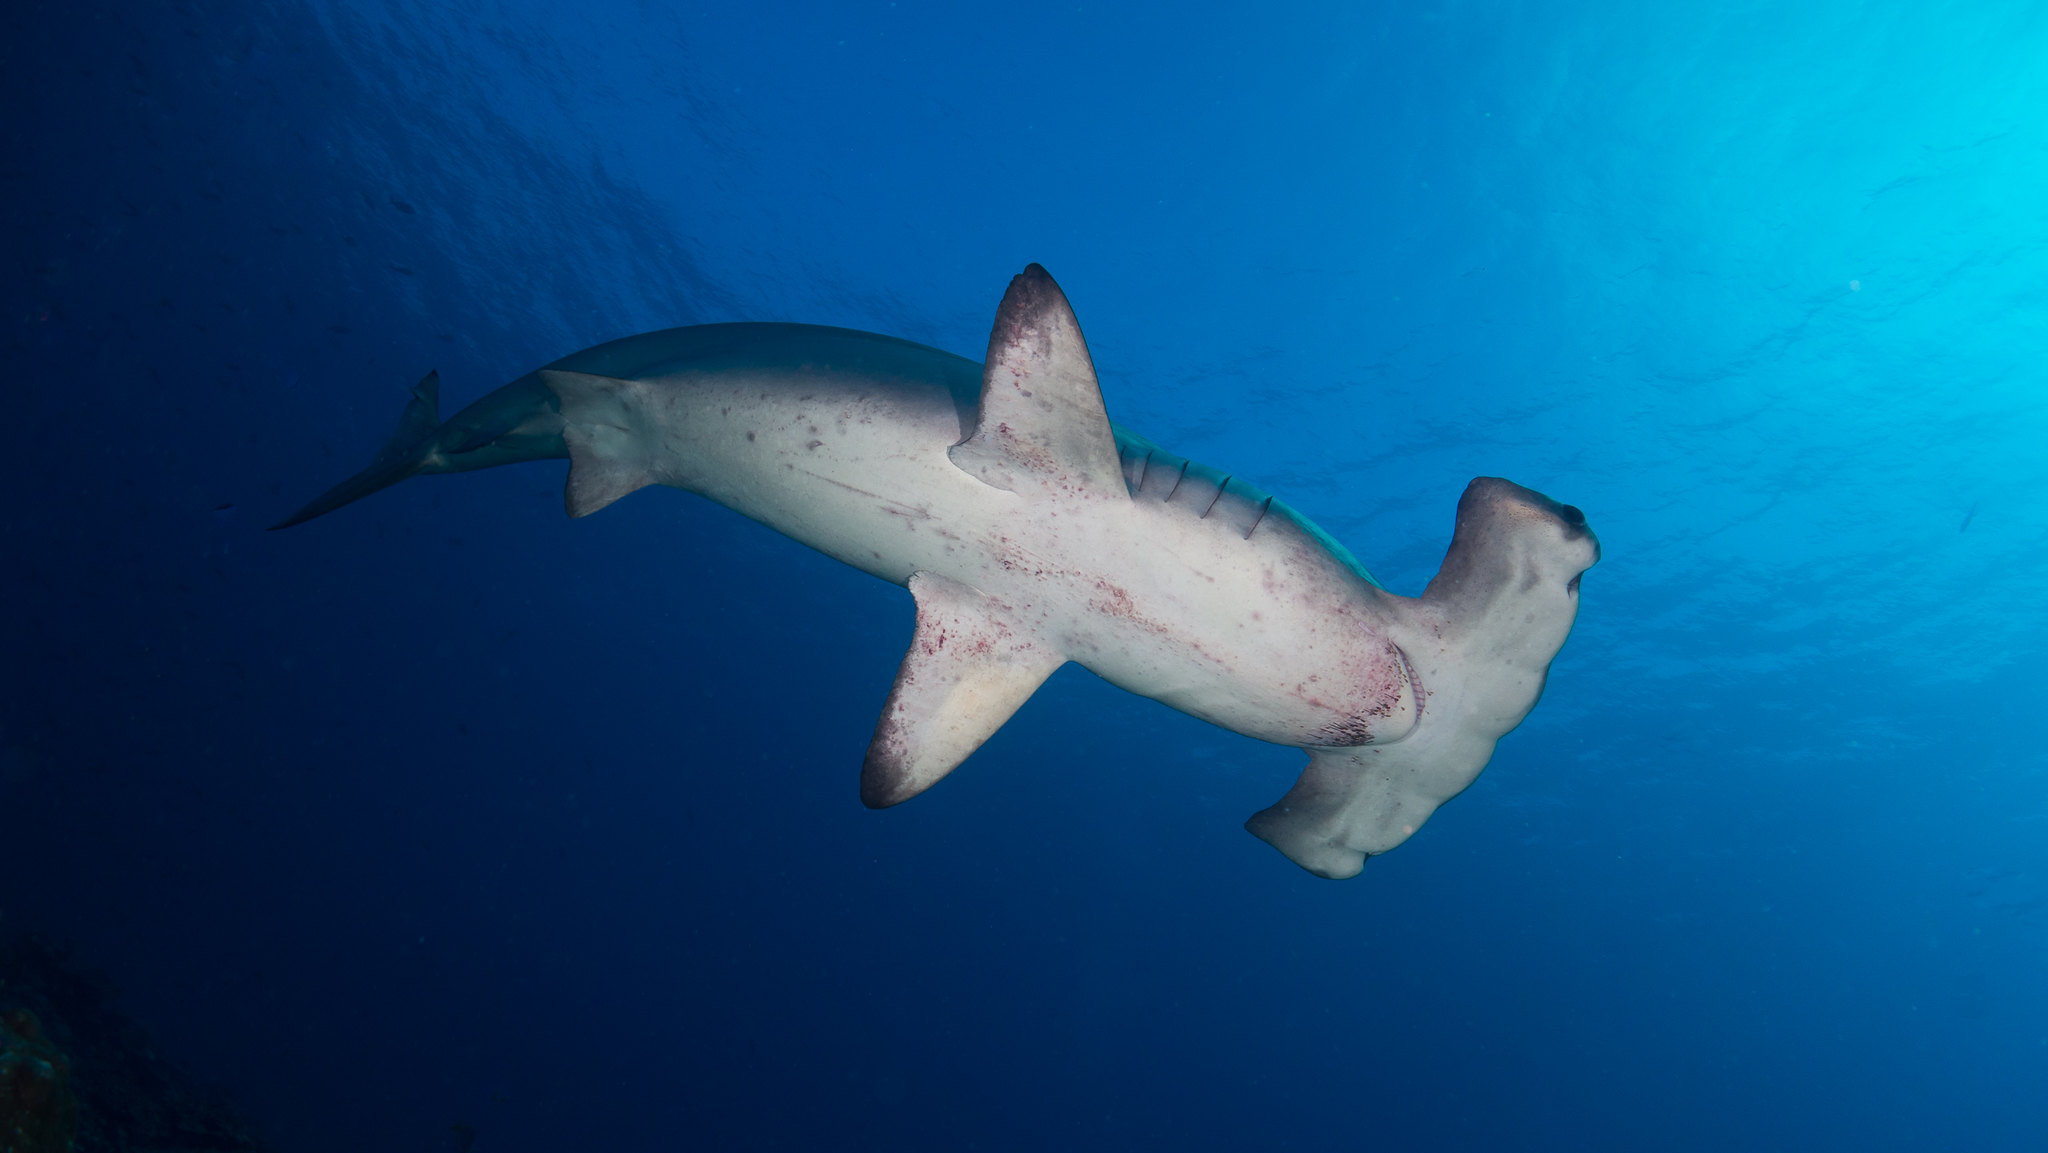 wax Wet Spectacular Registros sugerem que barbatanas de tubarão chegam ilegalmente à Ásia - A  Referência